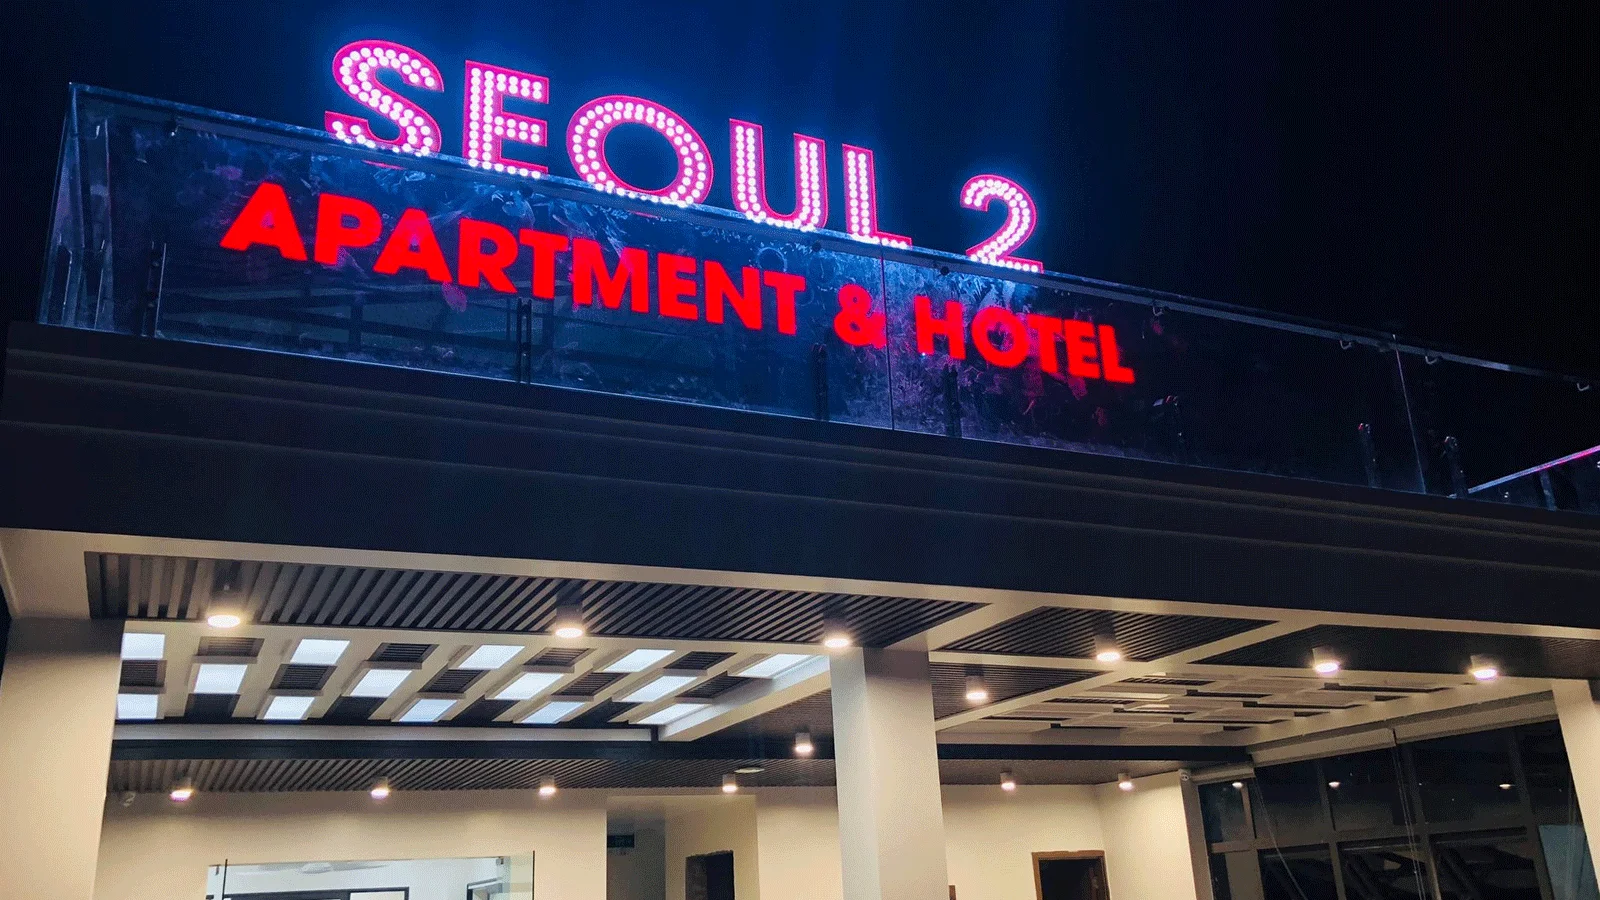 Khách sạn Cát Bà Seoul 2 Apartment & Hotel